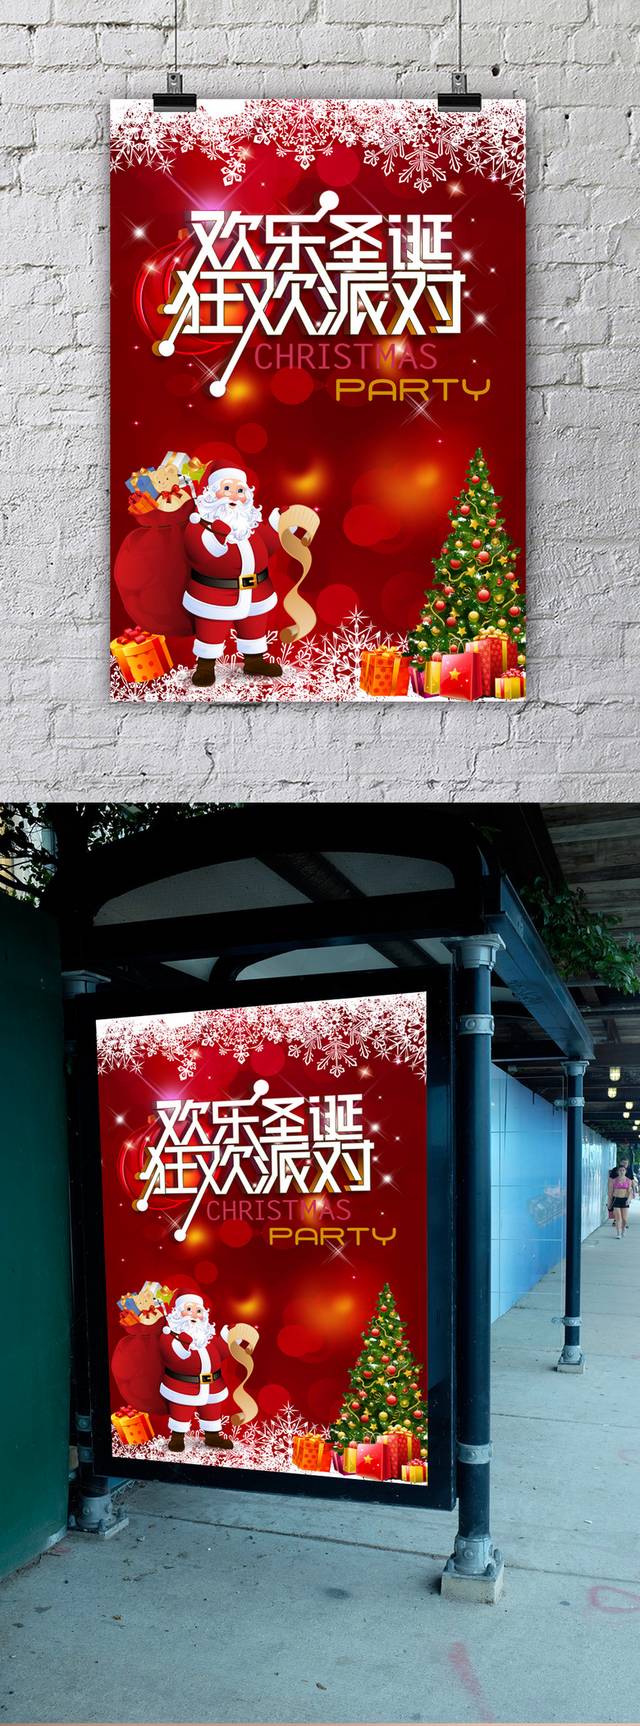 欢乐圣诞狂欢派对海报